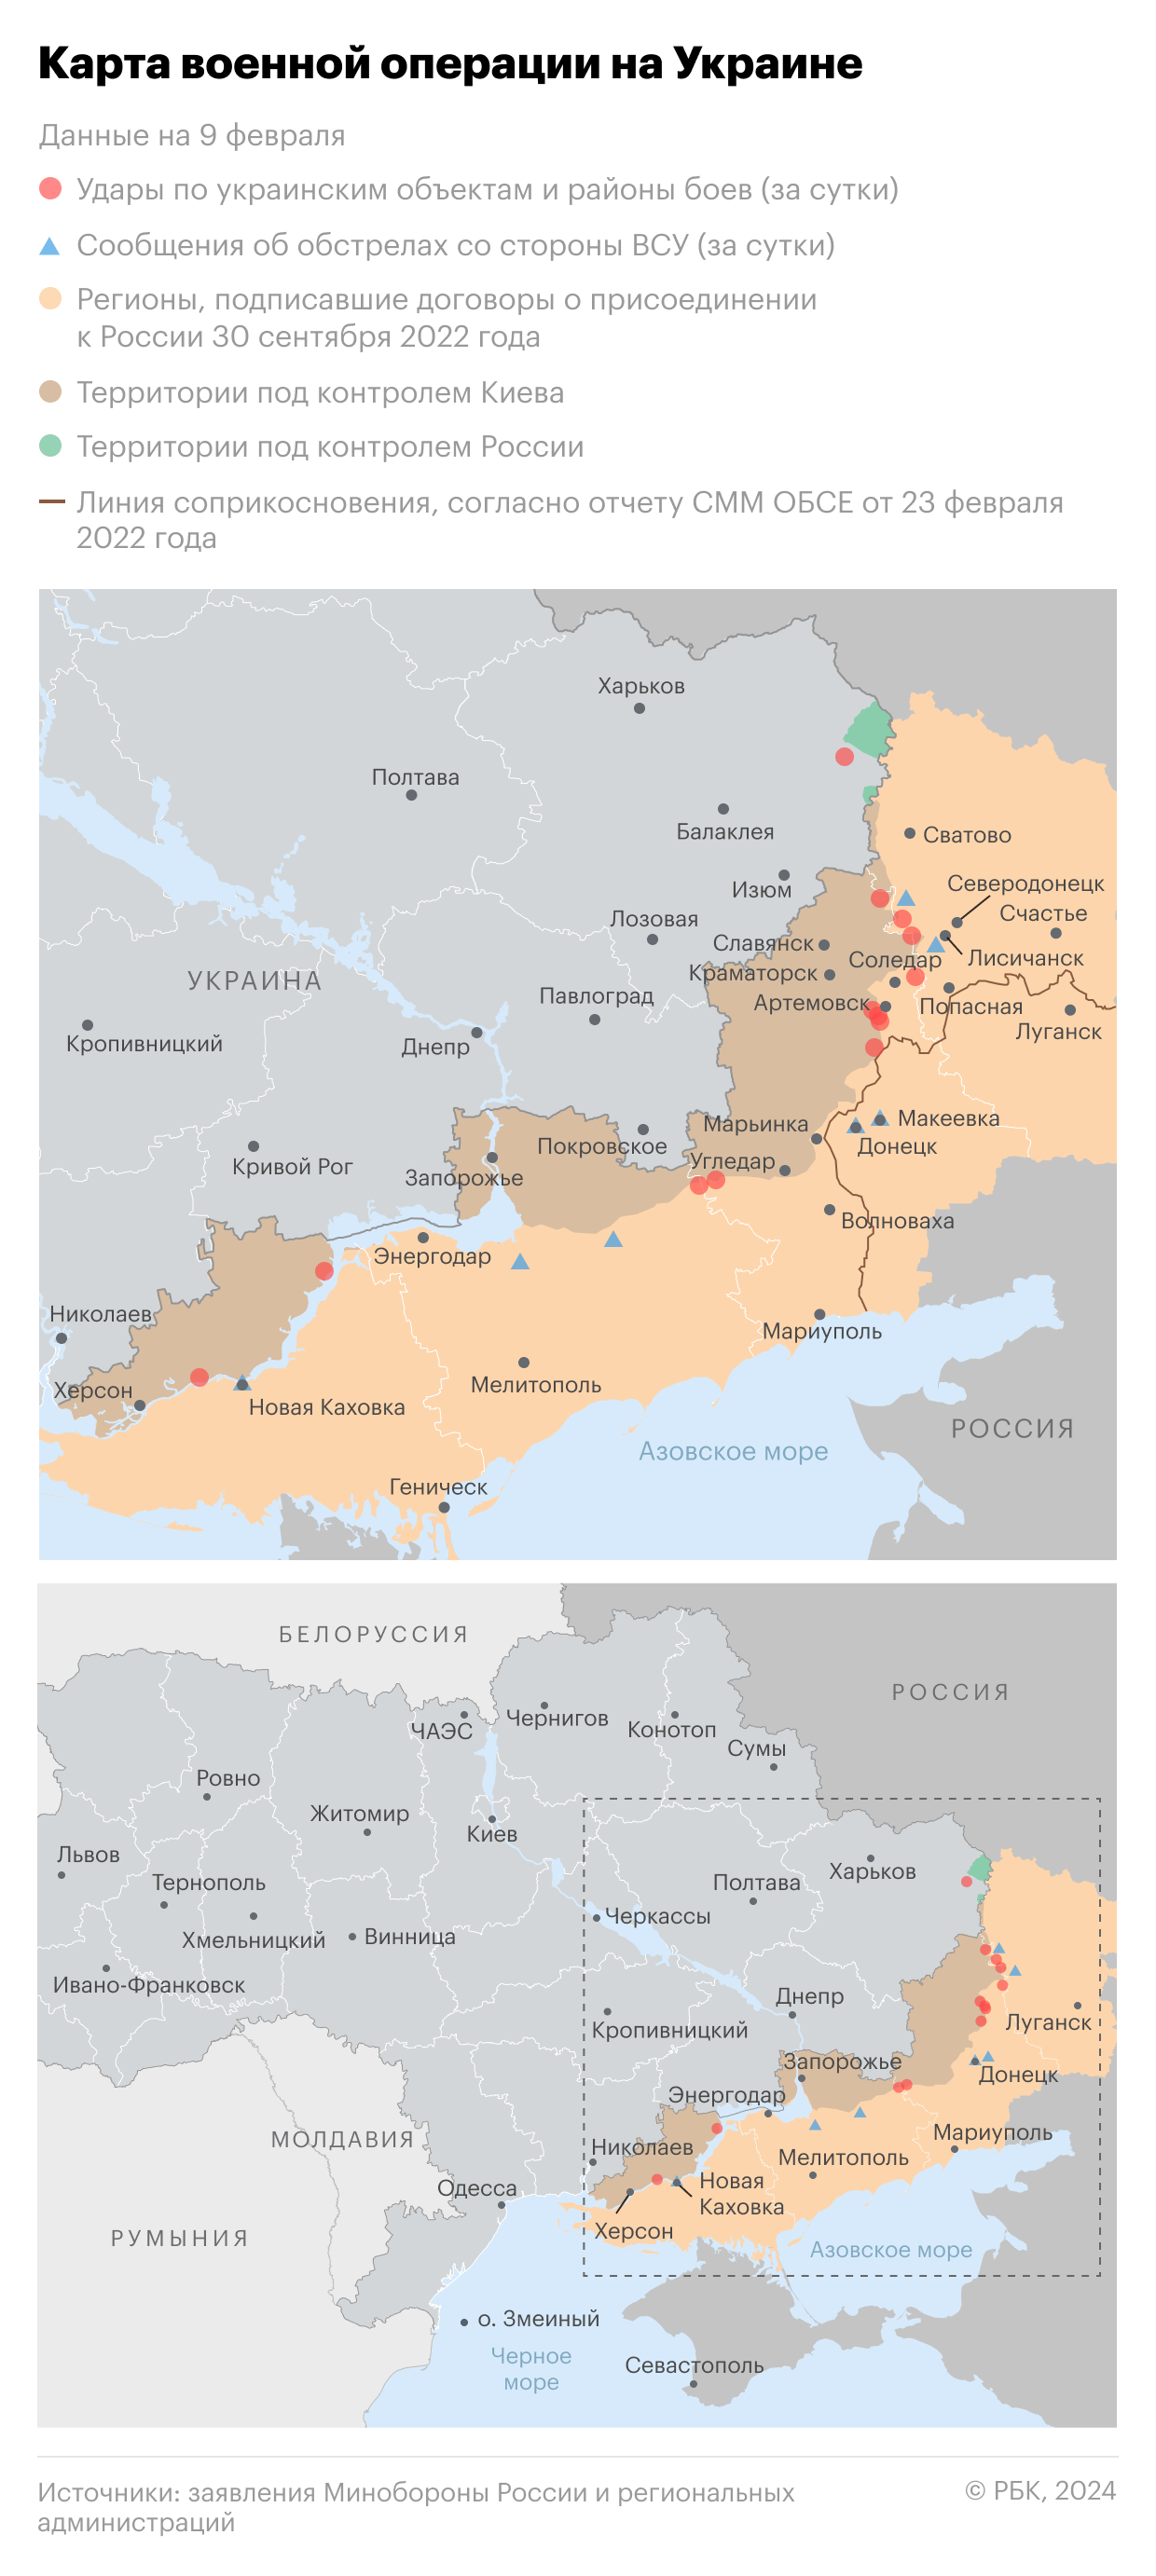 Военная операция на Украине. Карта на 9 февраля